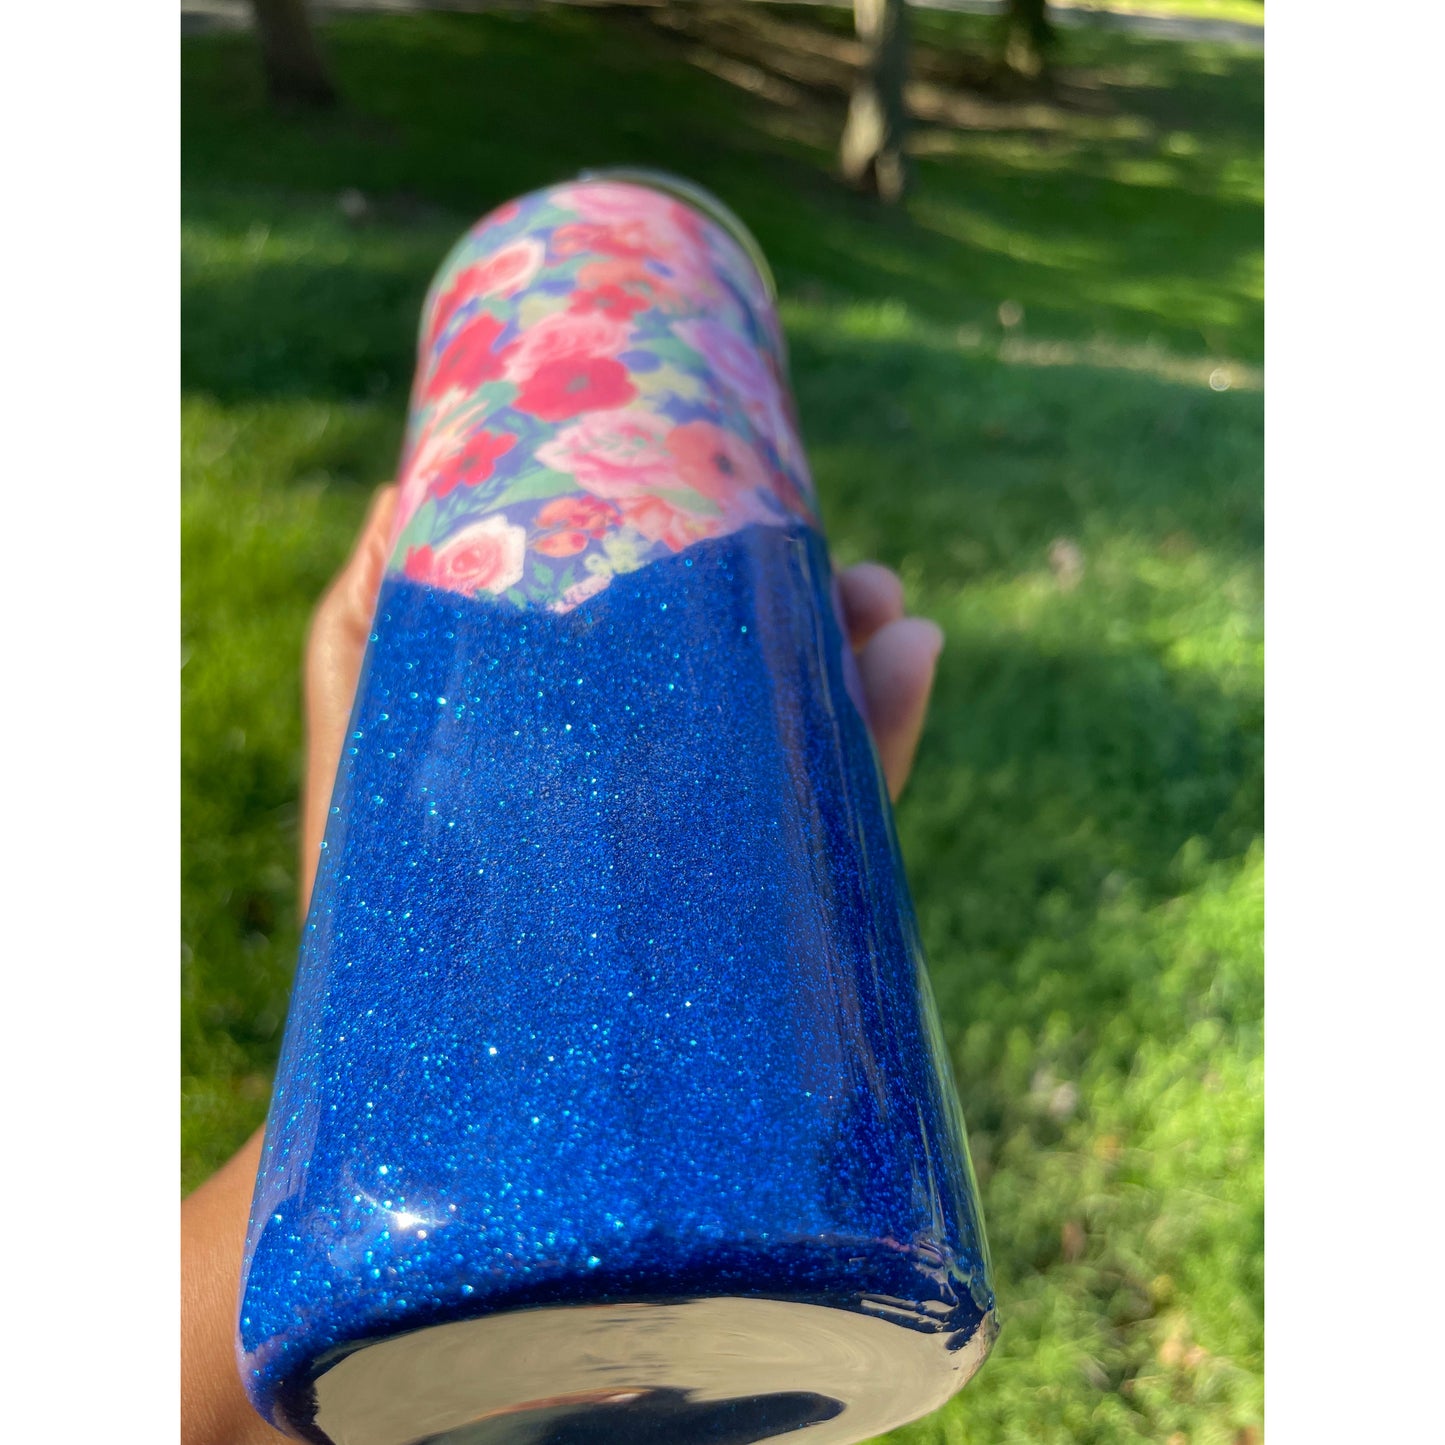 20oz skinny tumbler with v-split floral design and blue glitter